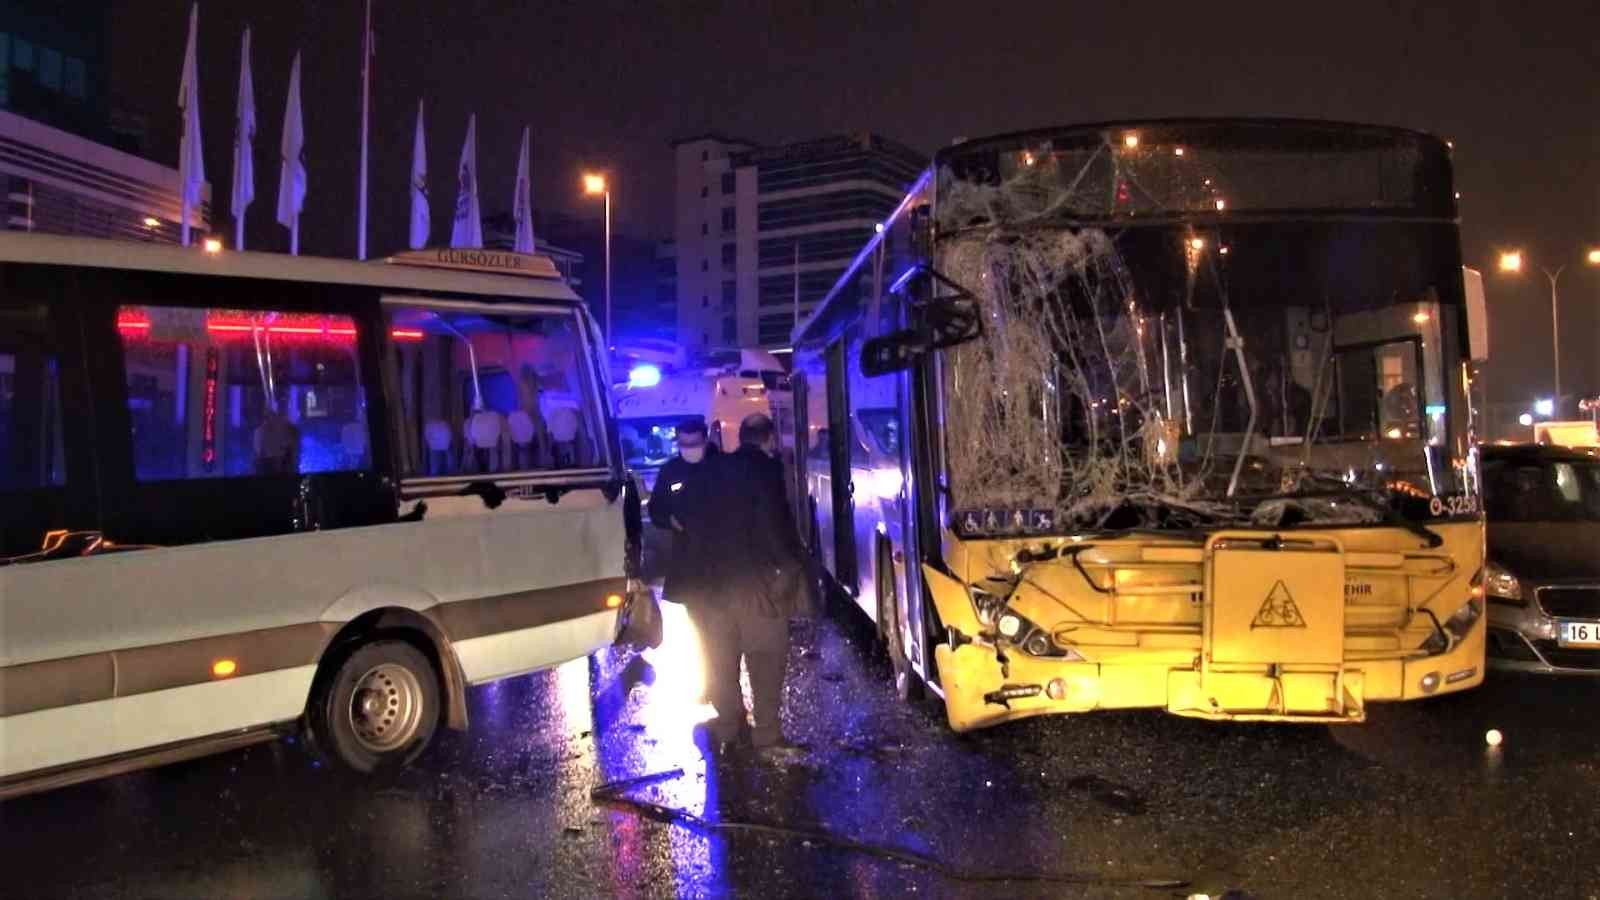 Maltepe’de sürücüsünün direksiyon hakimiyetini kaybettiği İETT otobüsü, durakta bekleyen yolcu minibüsüne çarptı. Kazada minibüste bulunan 5 ...